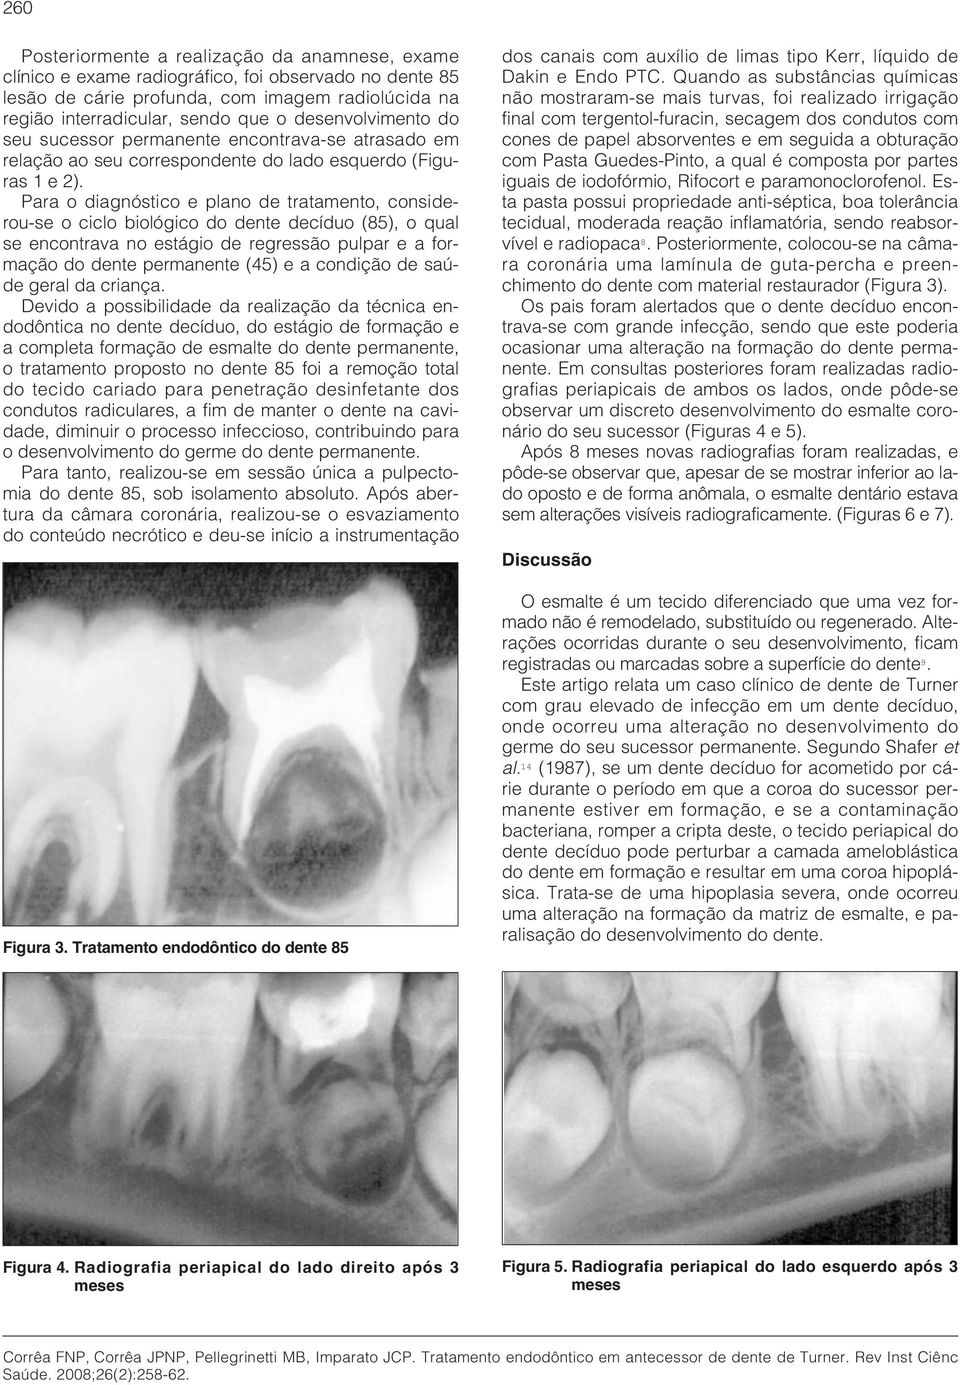 Para o diagnóstico e plano de tratamento, considerou-se o ciclo biológico do dente decíduo (85), o qual se encontrava no estágio de regressão pulpar e a formação do dente permanente (45) e a condição